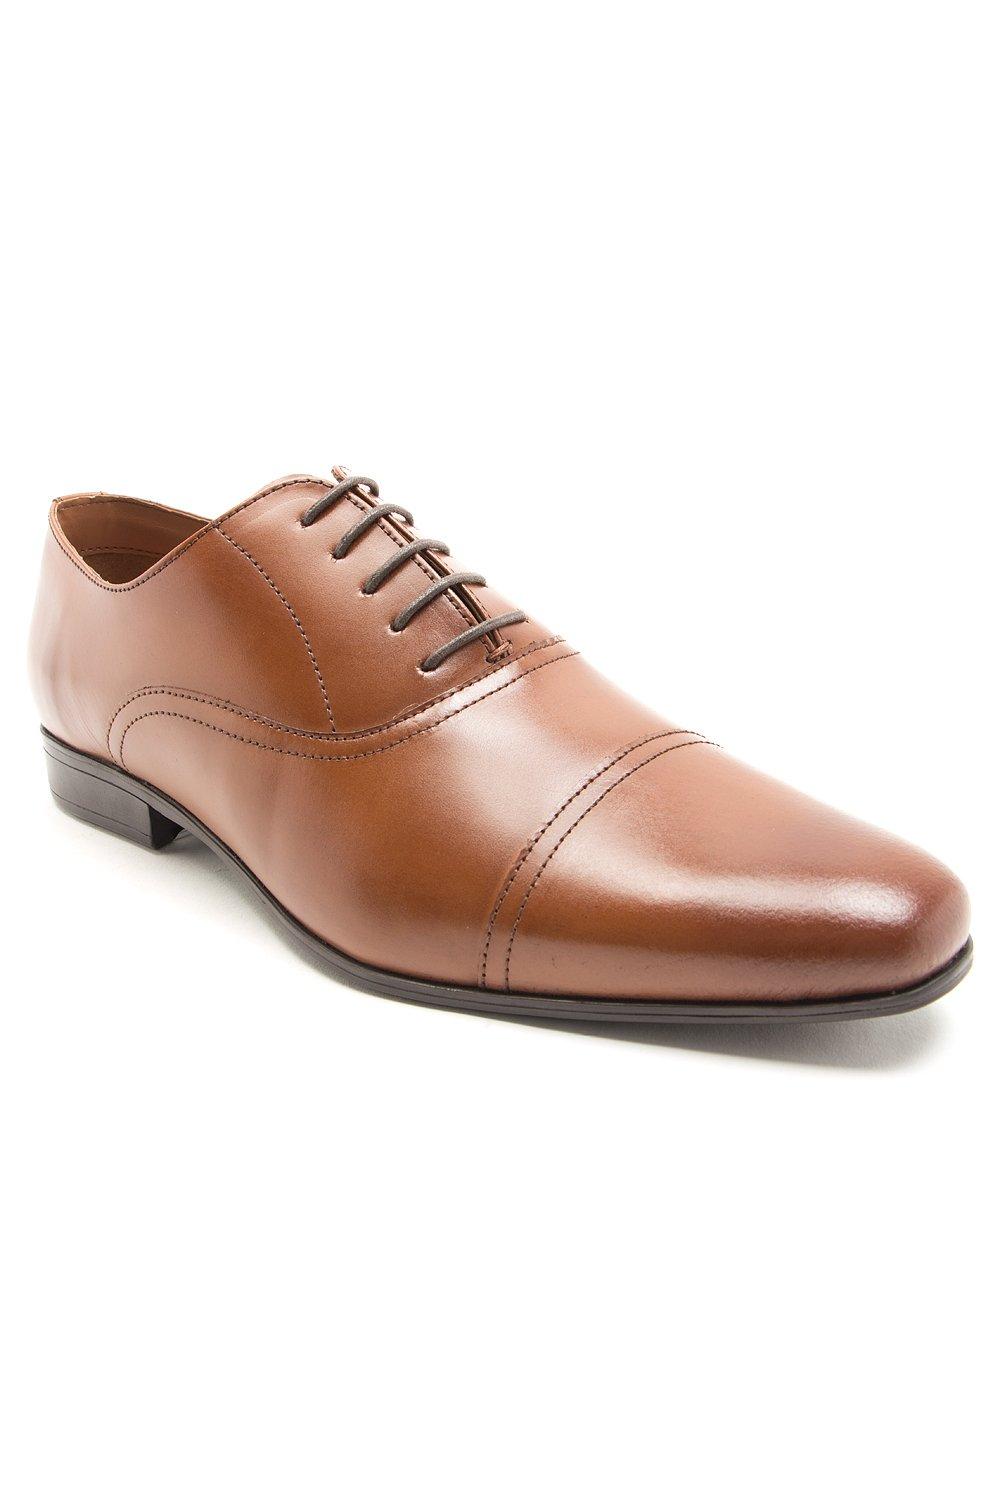 mellor Классические оксфорды Mellor на шнуровке Официальная обувь Thomas Crick, коричневый